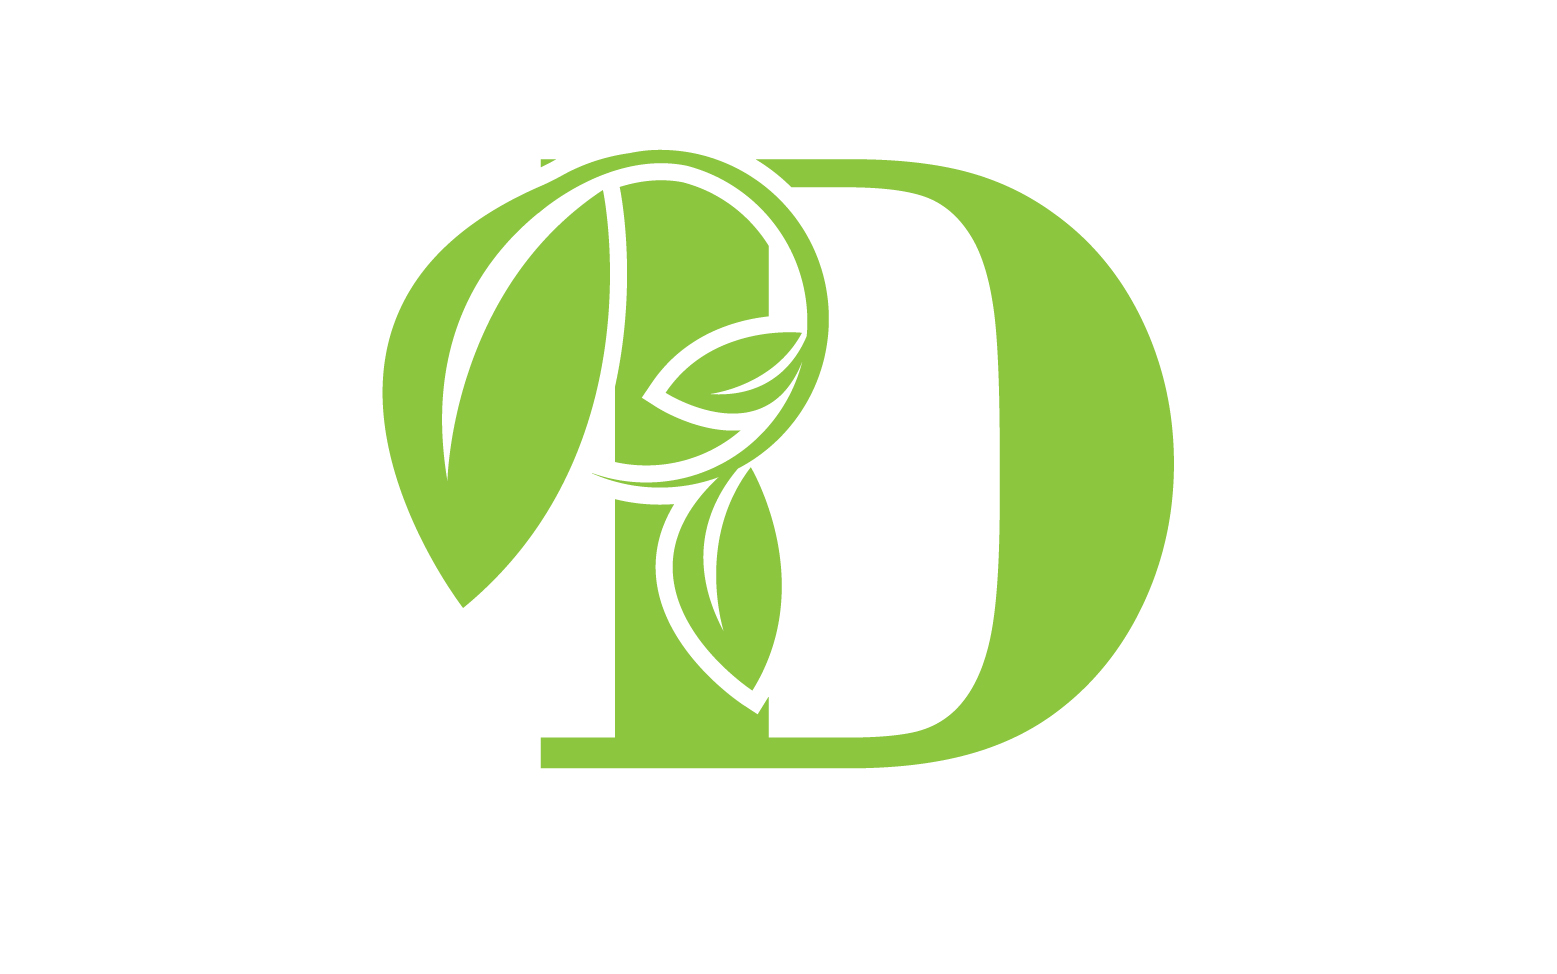 D letter logo leaf green vector version v 56